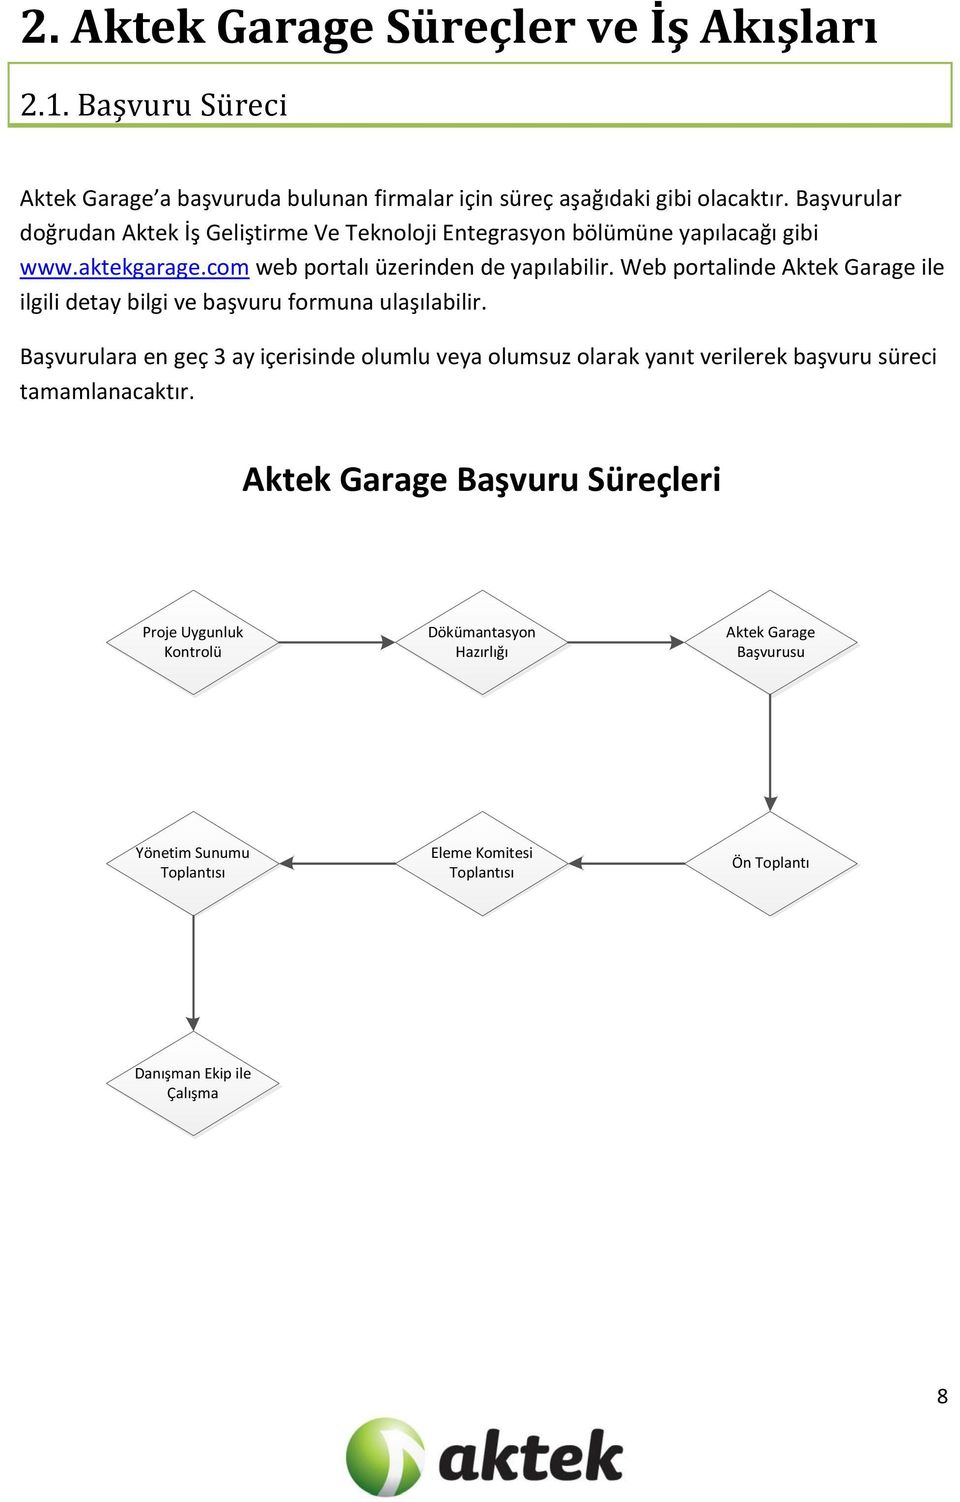 Web portalinde Aktek Garage ile ilgili detay bilgi ve başvuru formuna ulaşılabilir.